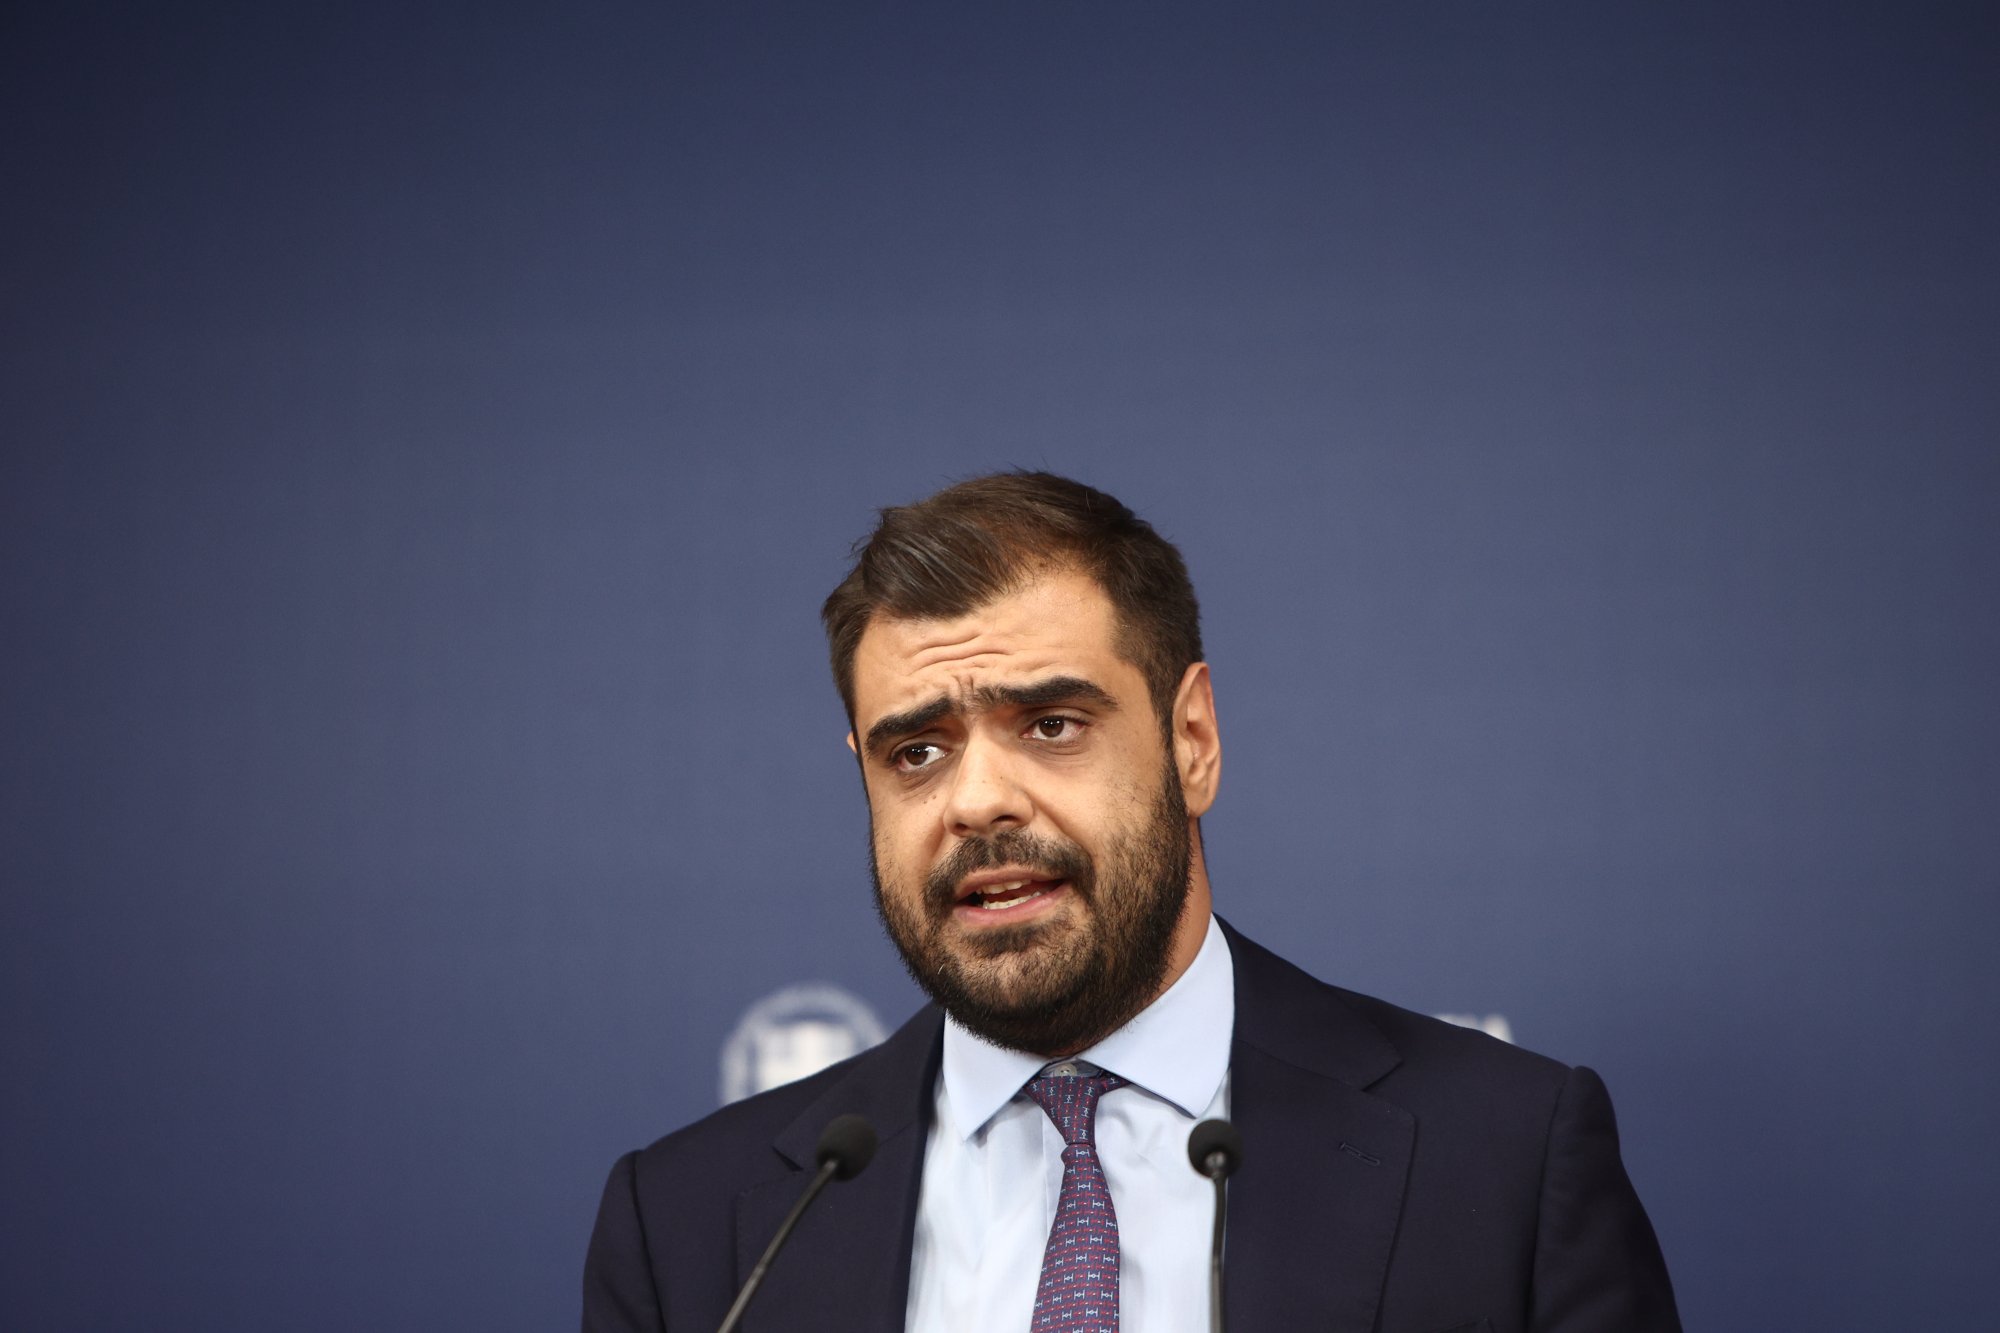 Π. Μαρινάκης «Δεν δικαιώθηκαν στην κάλπη κάποιες επιλογές της κυβέρνησης» στις αυτοδιοικητικές